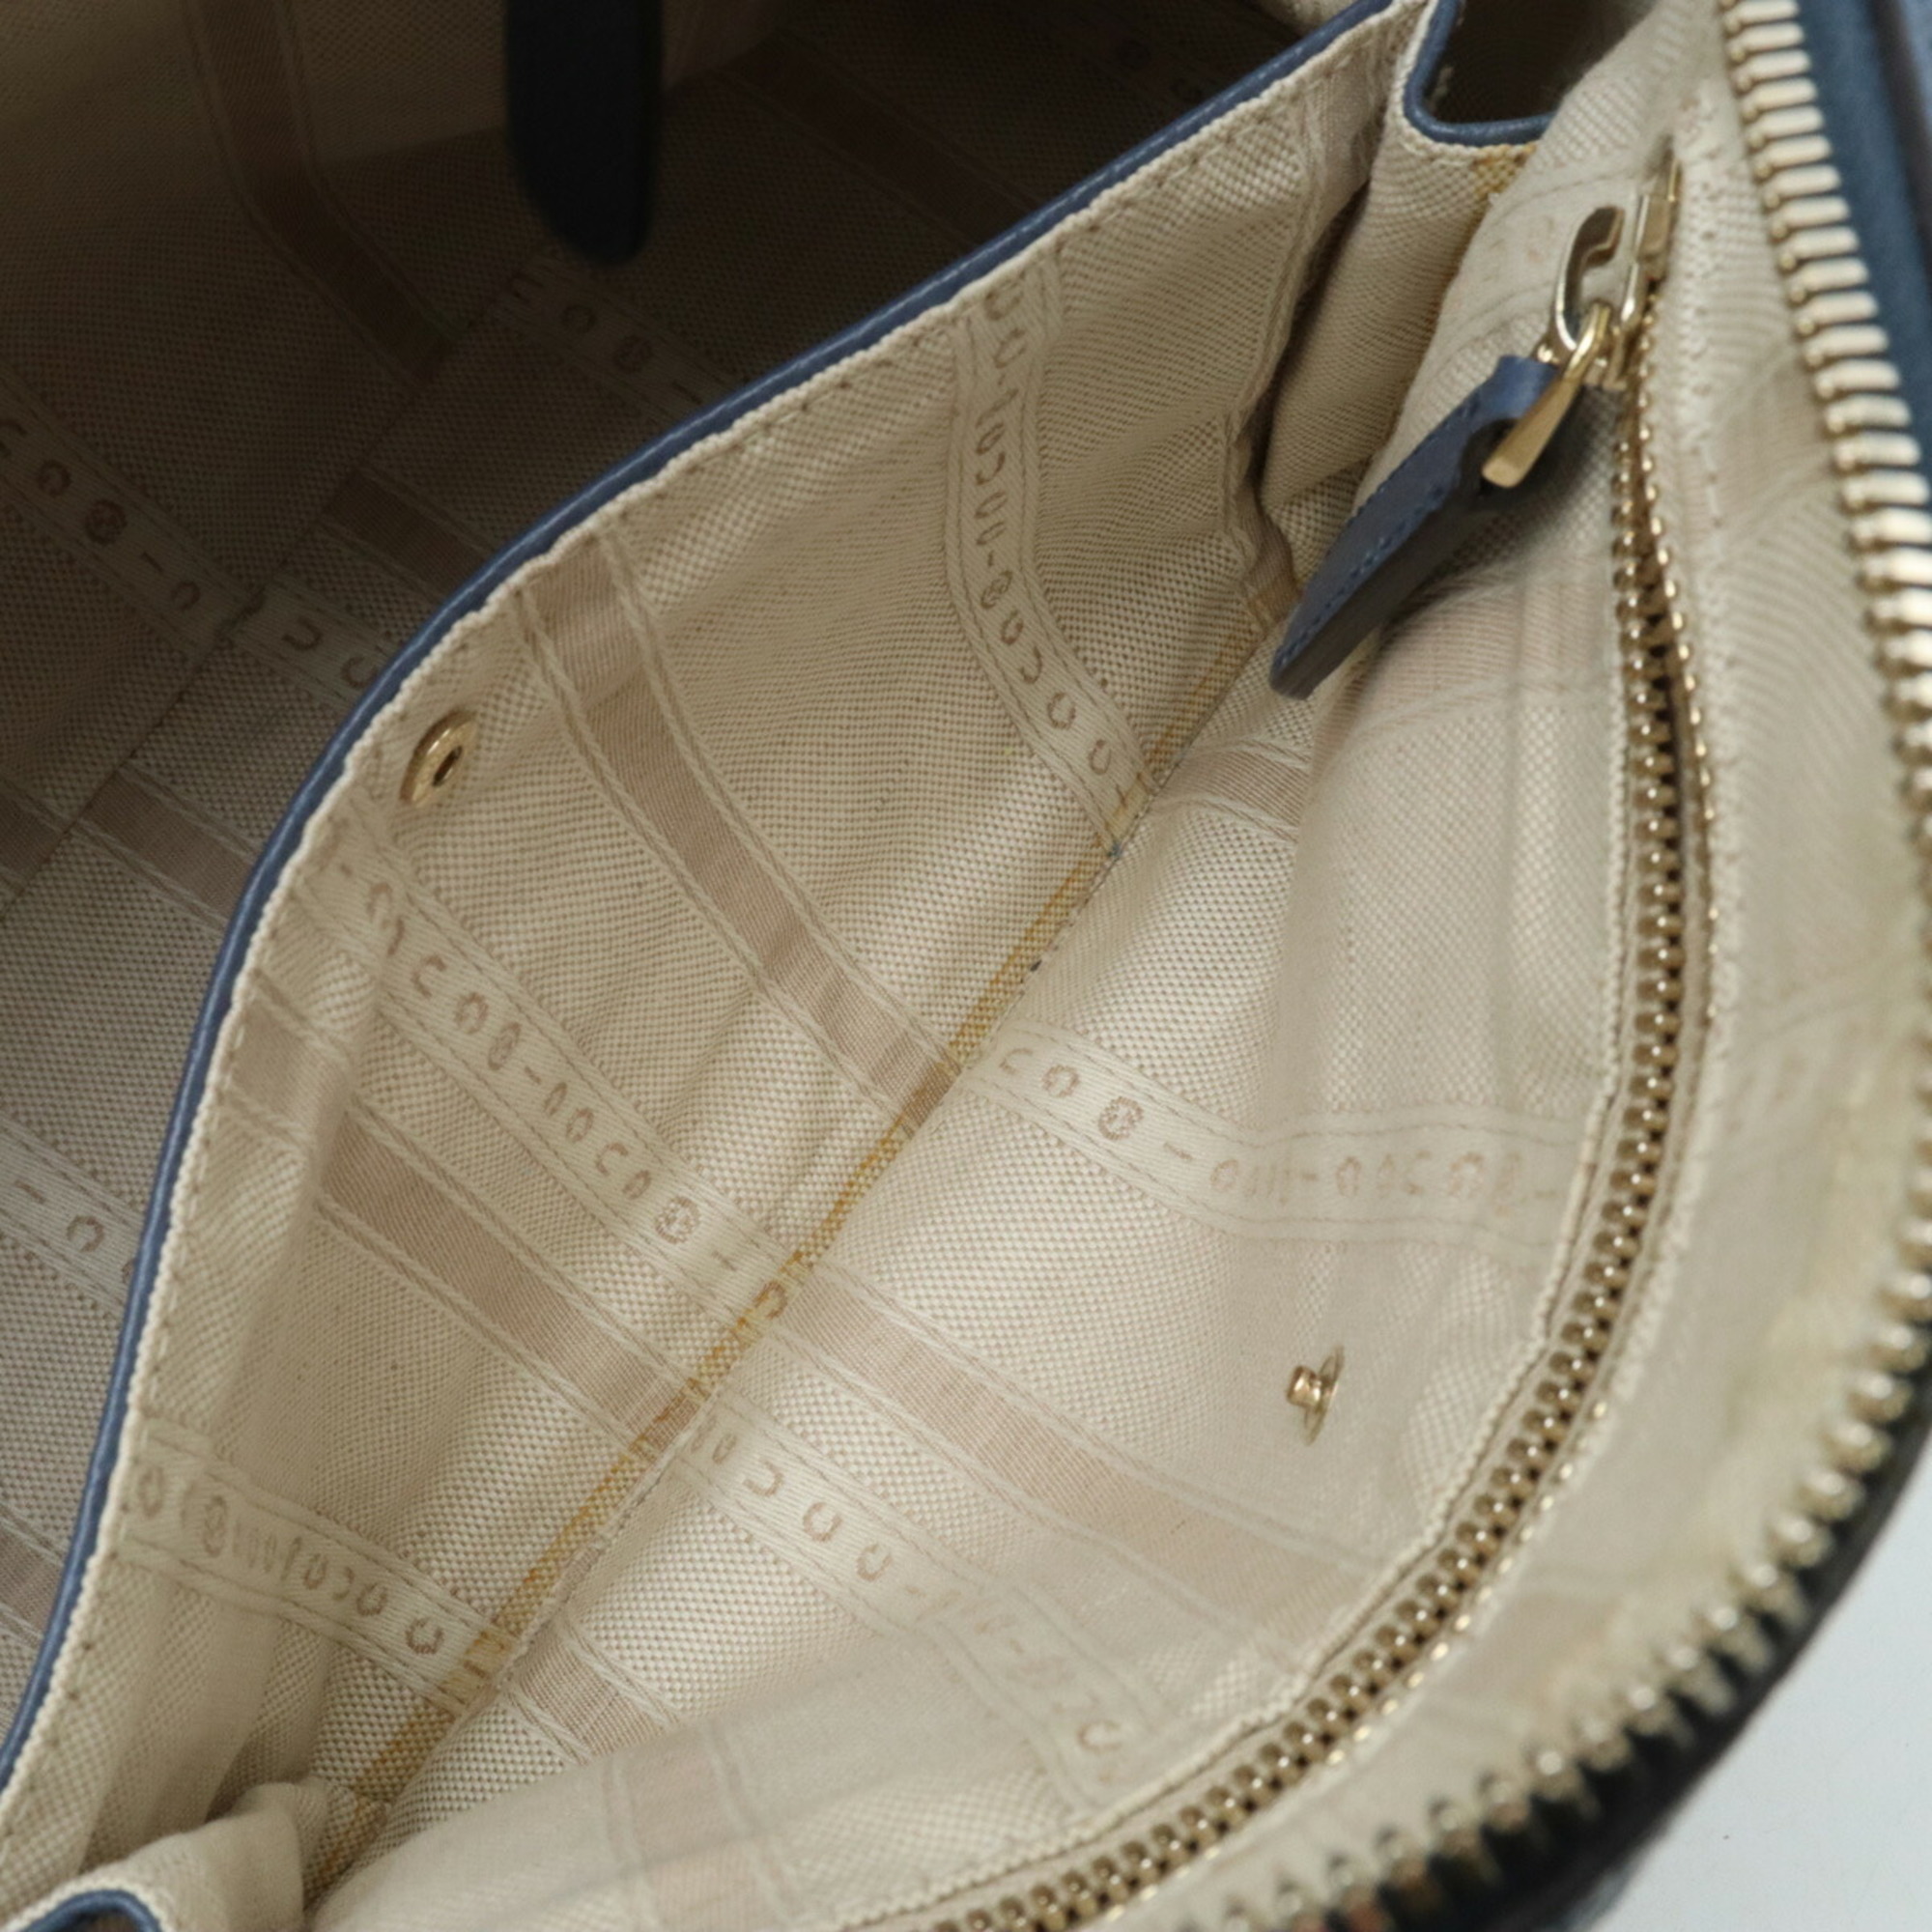 GUCCI Lady Dollar Handbag Shoulder Bag Leather Dusty Navy 388560